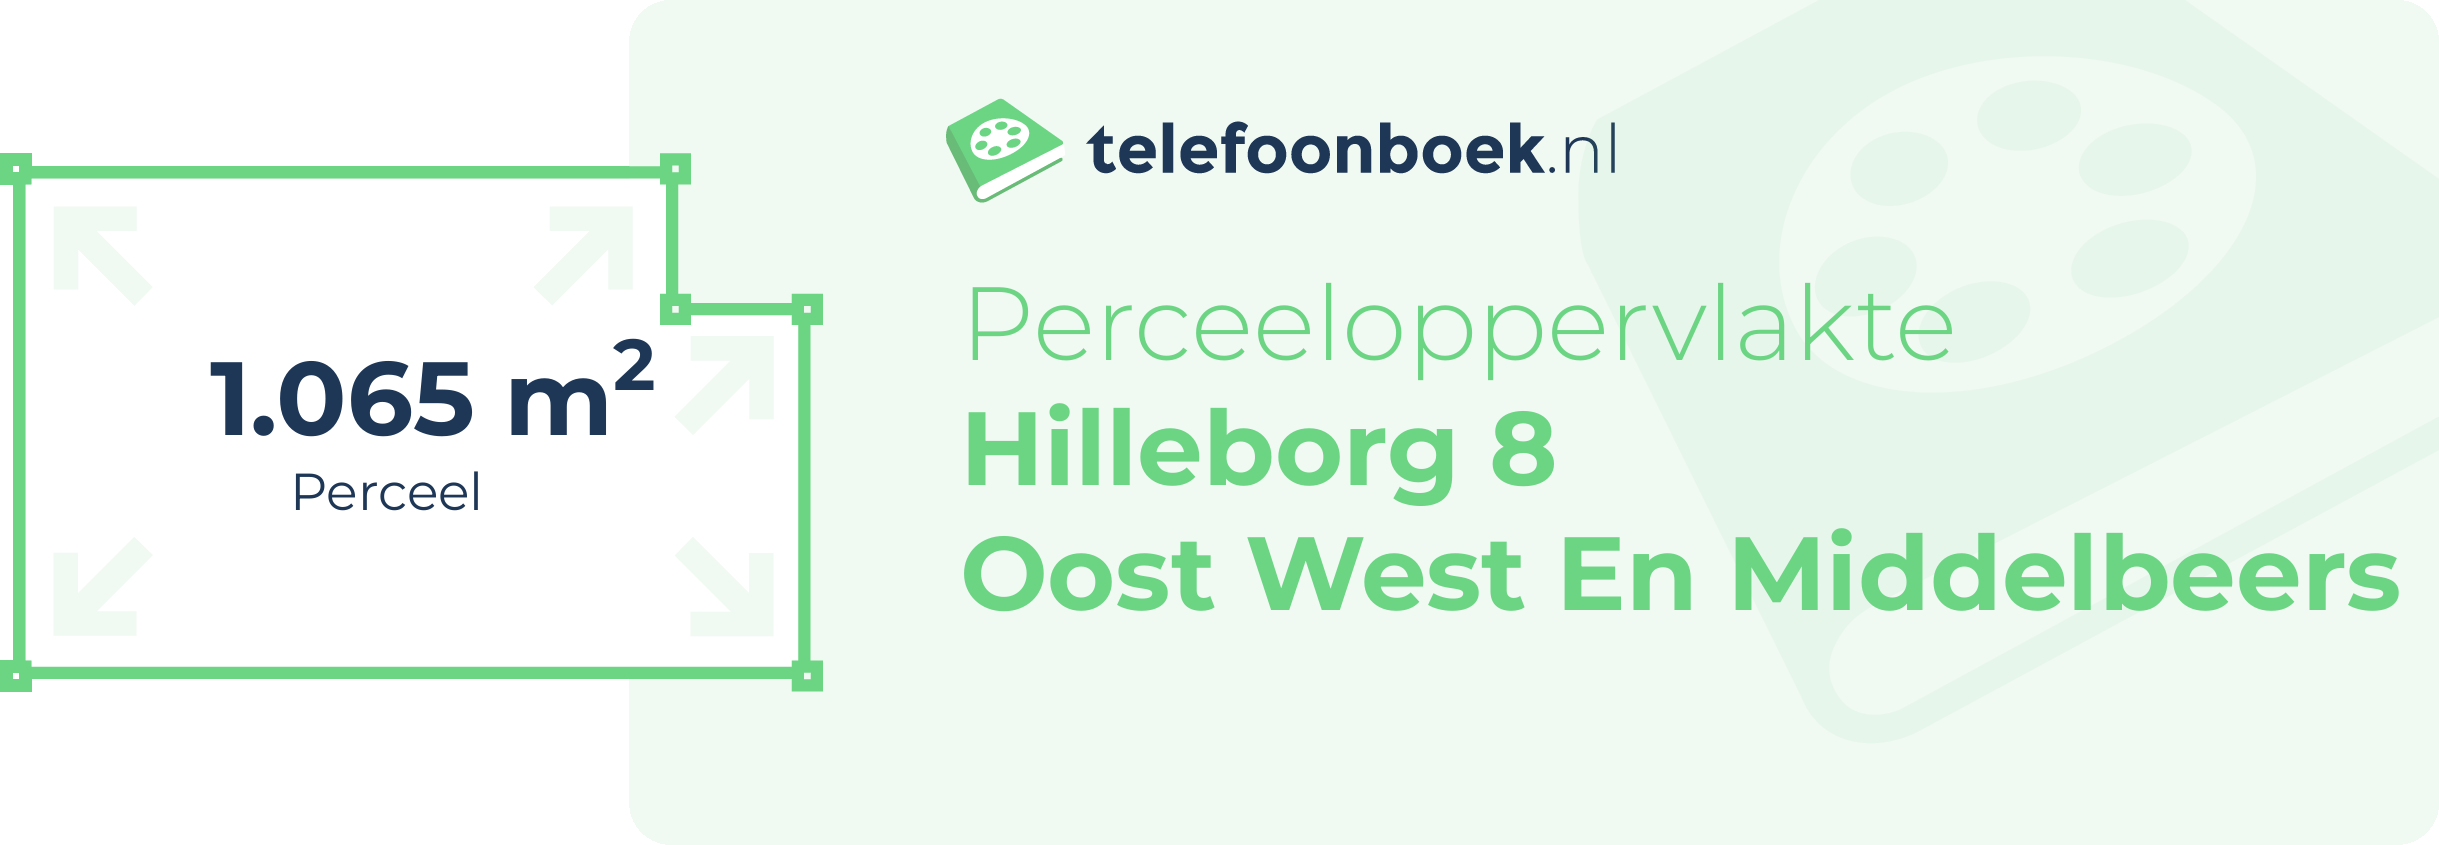 Perceeloppervlakte Hilleborg 8 Oost West En Middelbeers